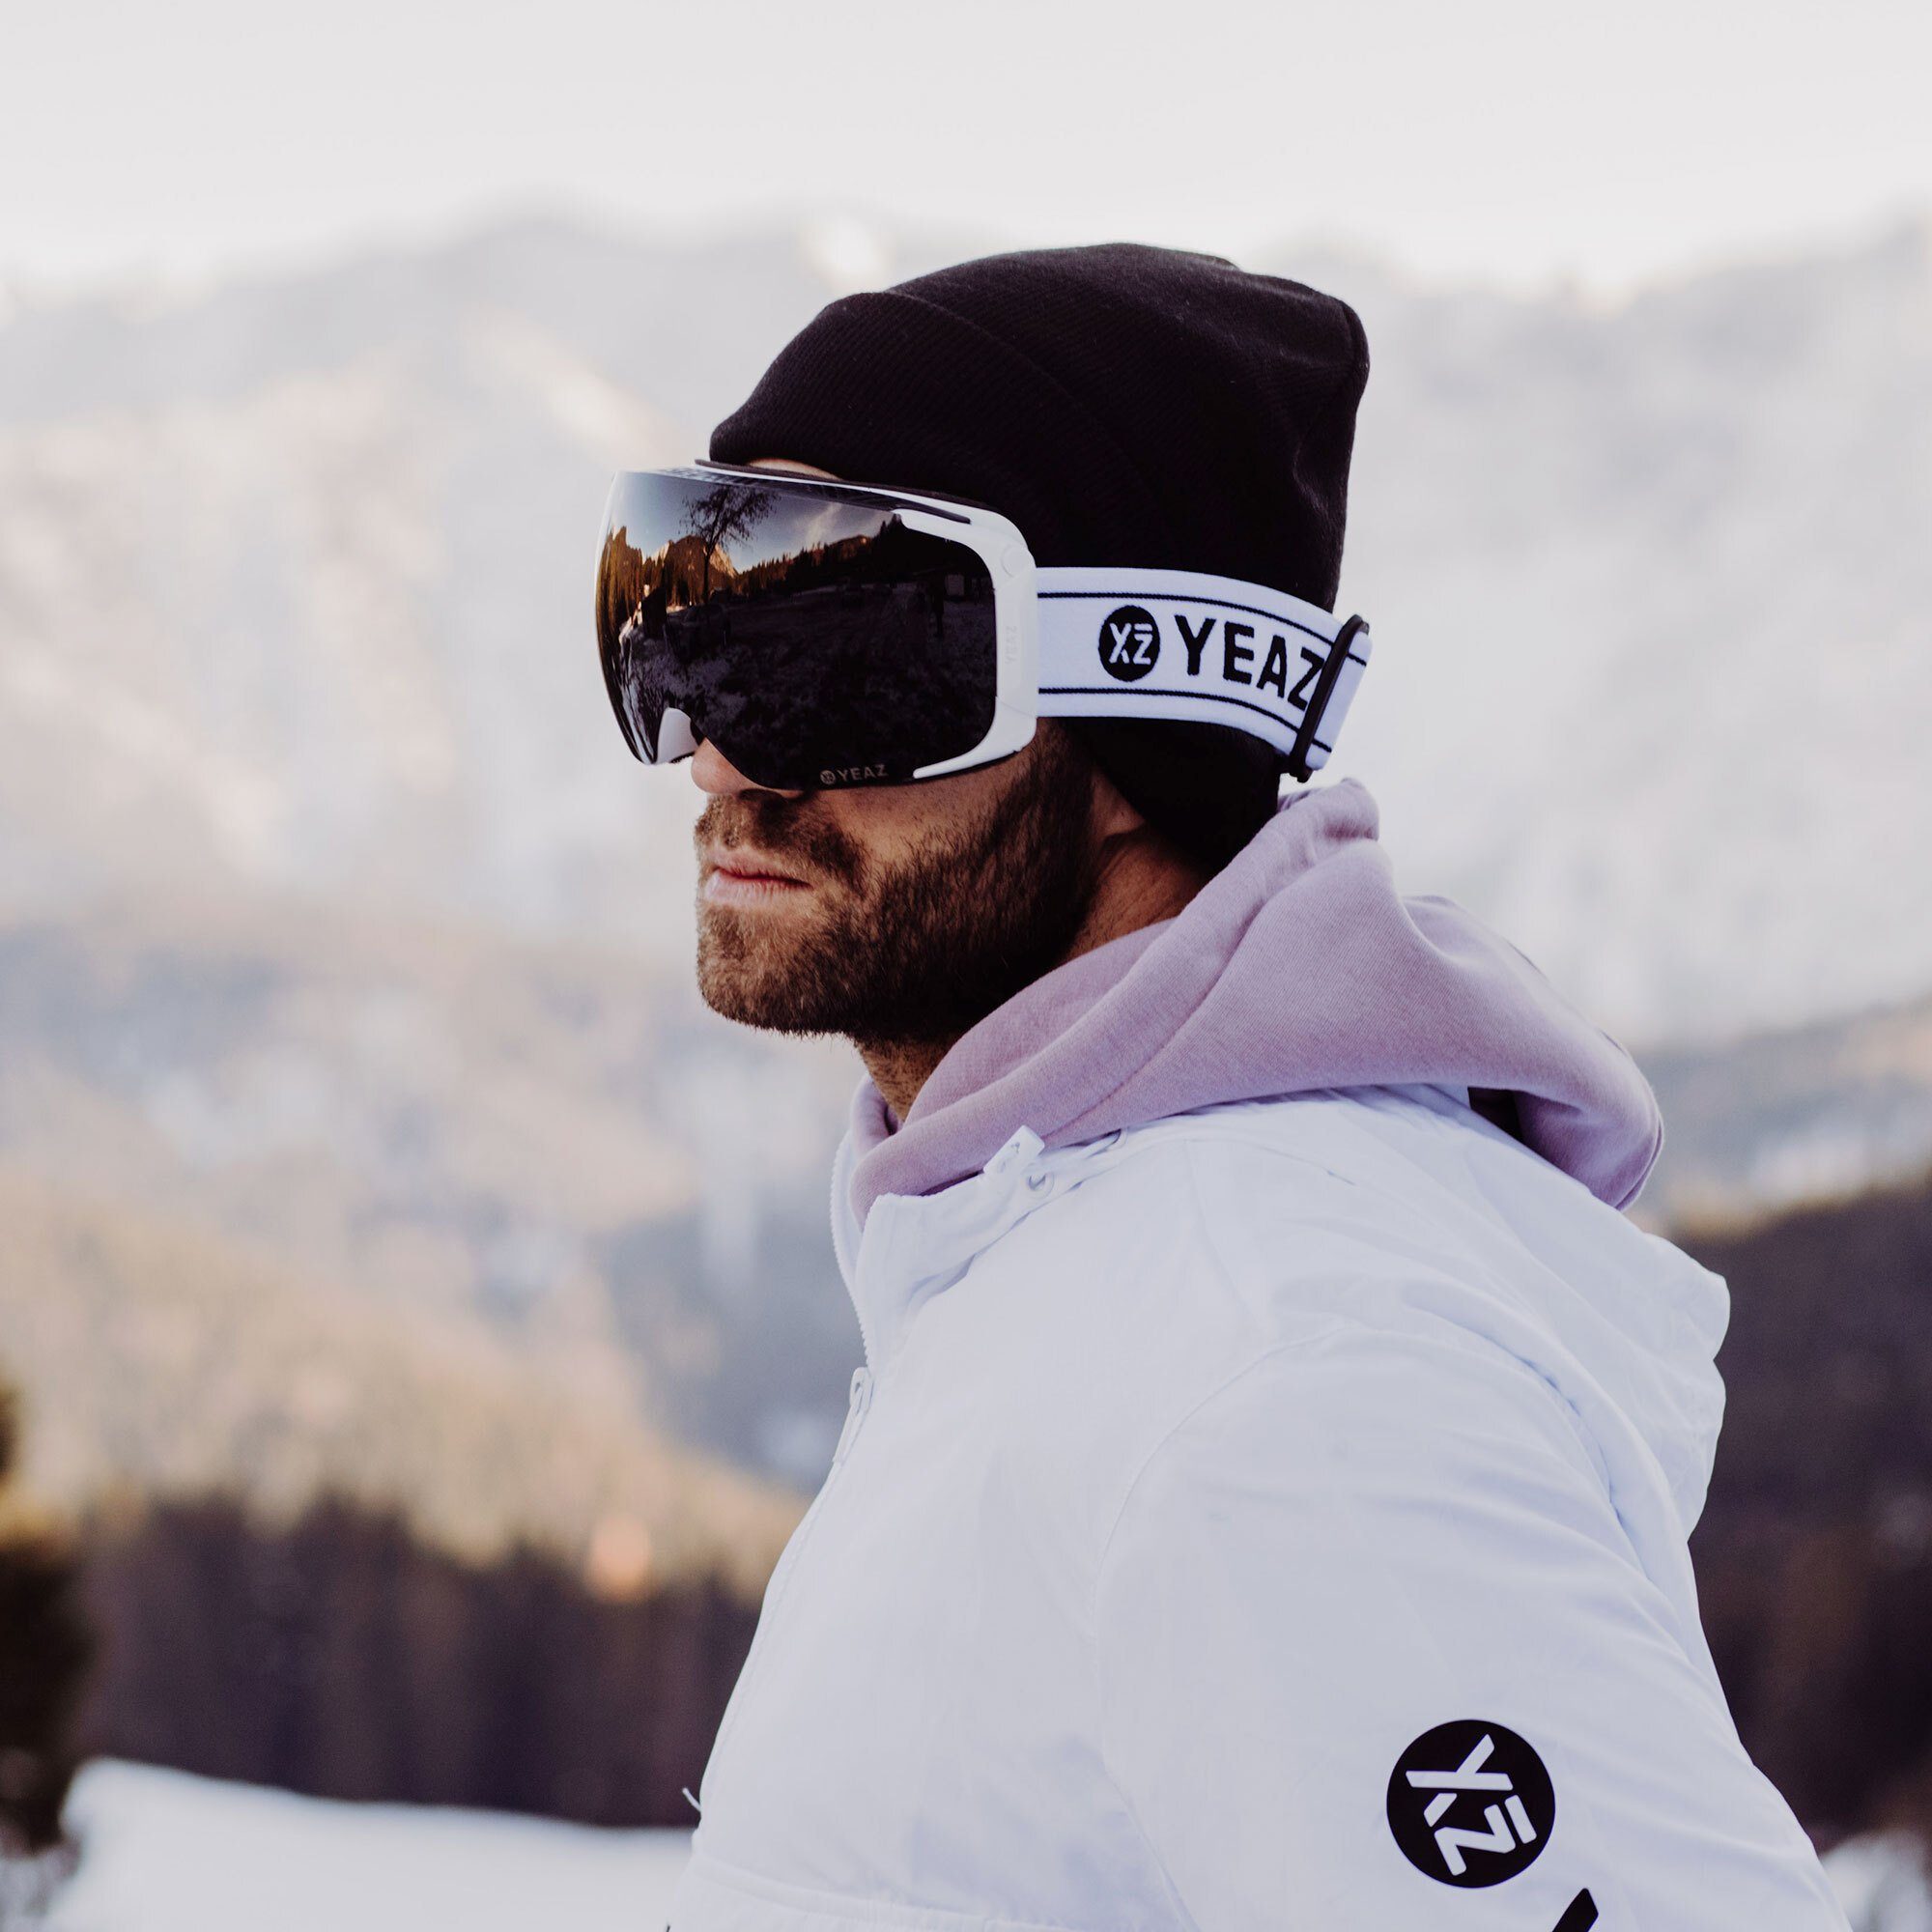 YEAZ Skibrille TWEAK-X ski- snowboard-brille, für Jugendliche Premium-Ski- und und Erwachsene Snowboardbrille und